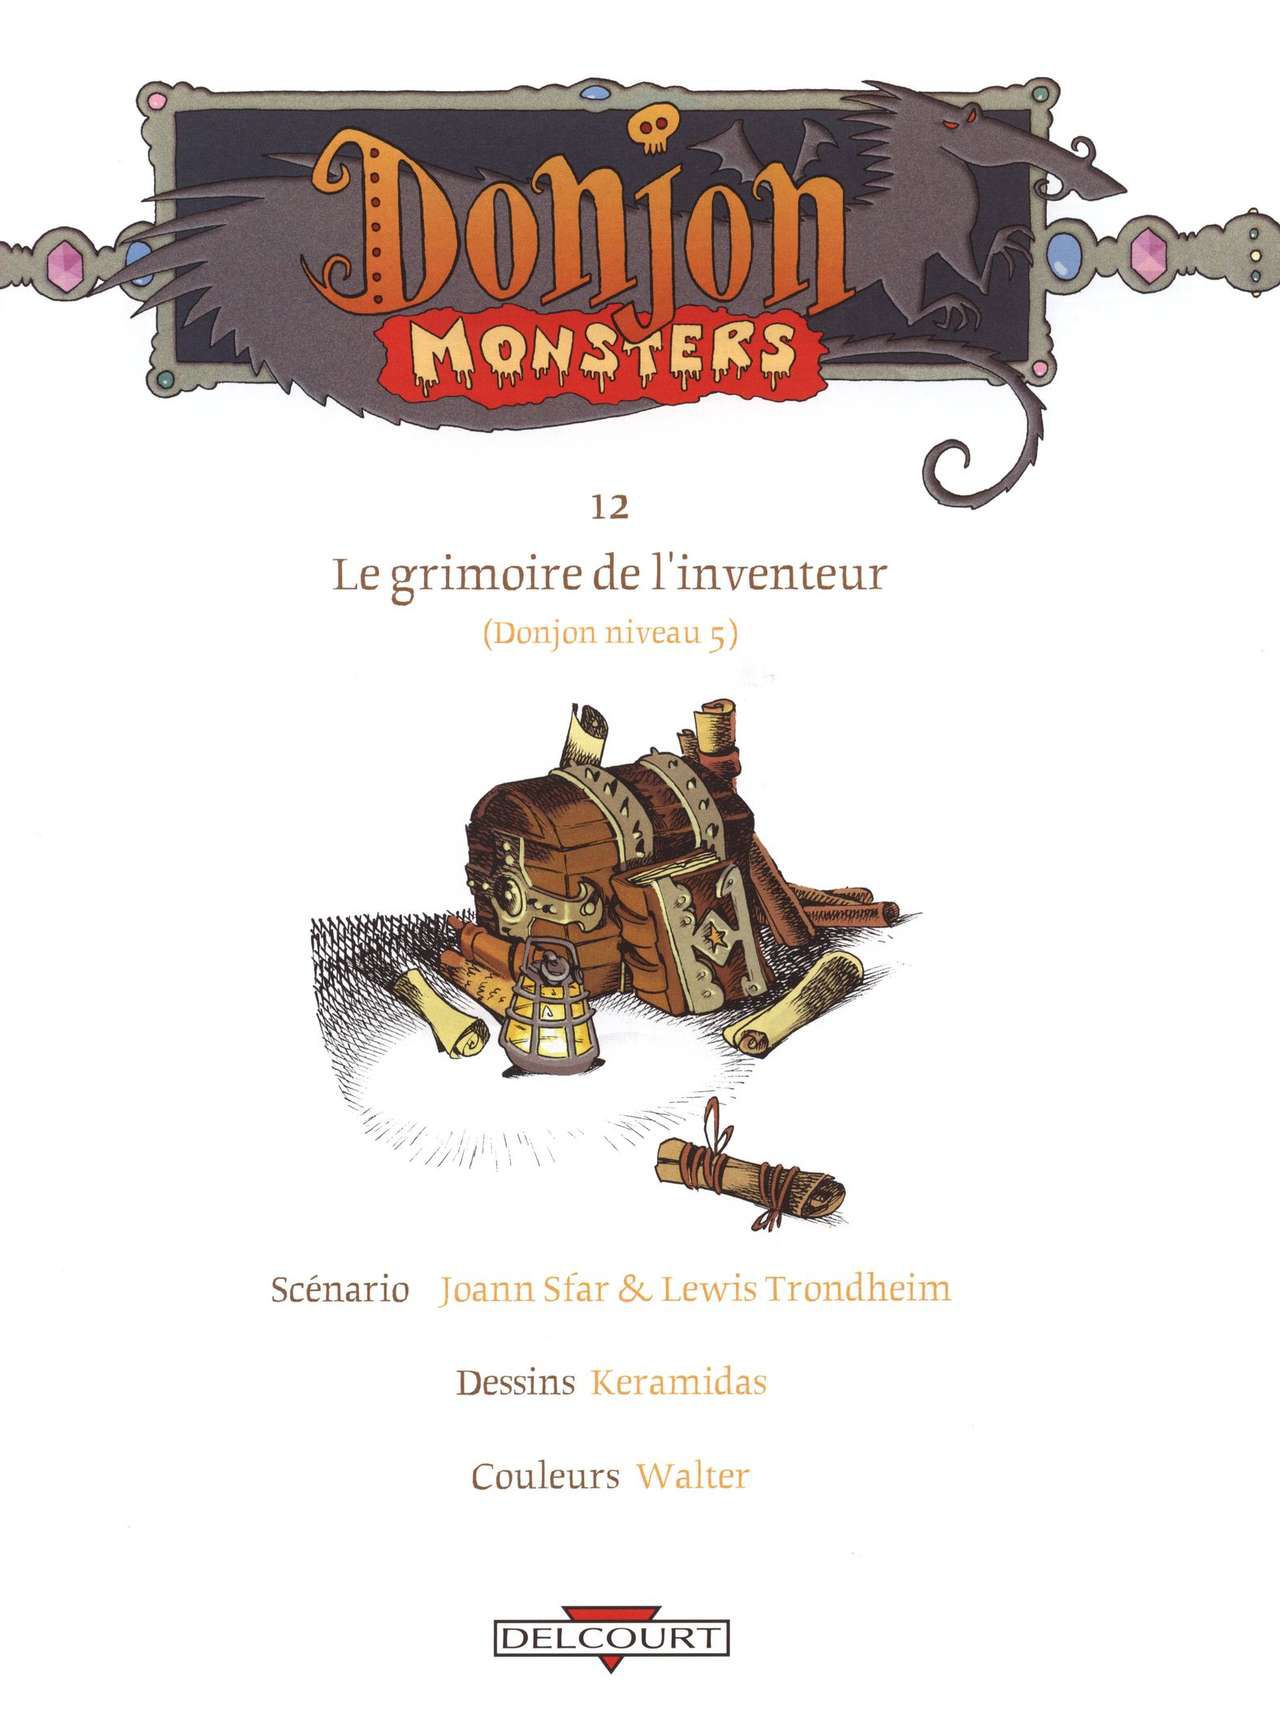 [Lewis Trondheim] Donjon monsters - Volume 12 - Le grimoire de l'inventeur [French] 5